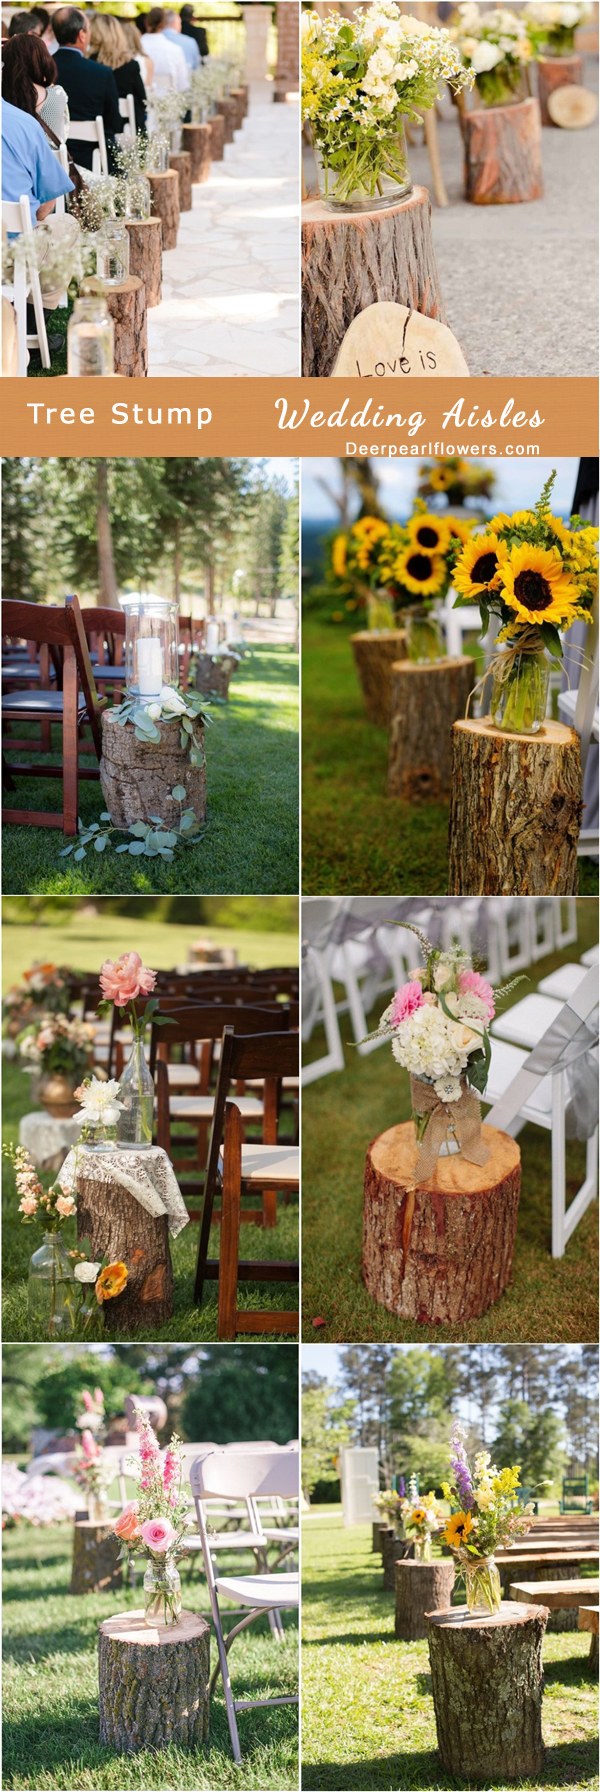 rustic tree stump wedding aisle decor ideas